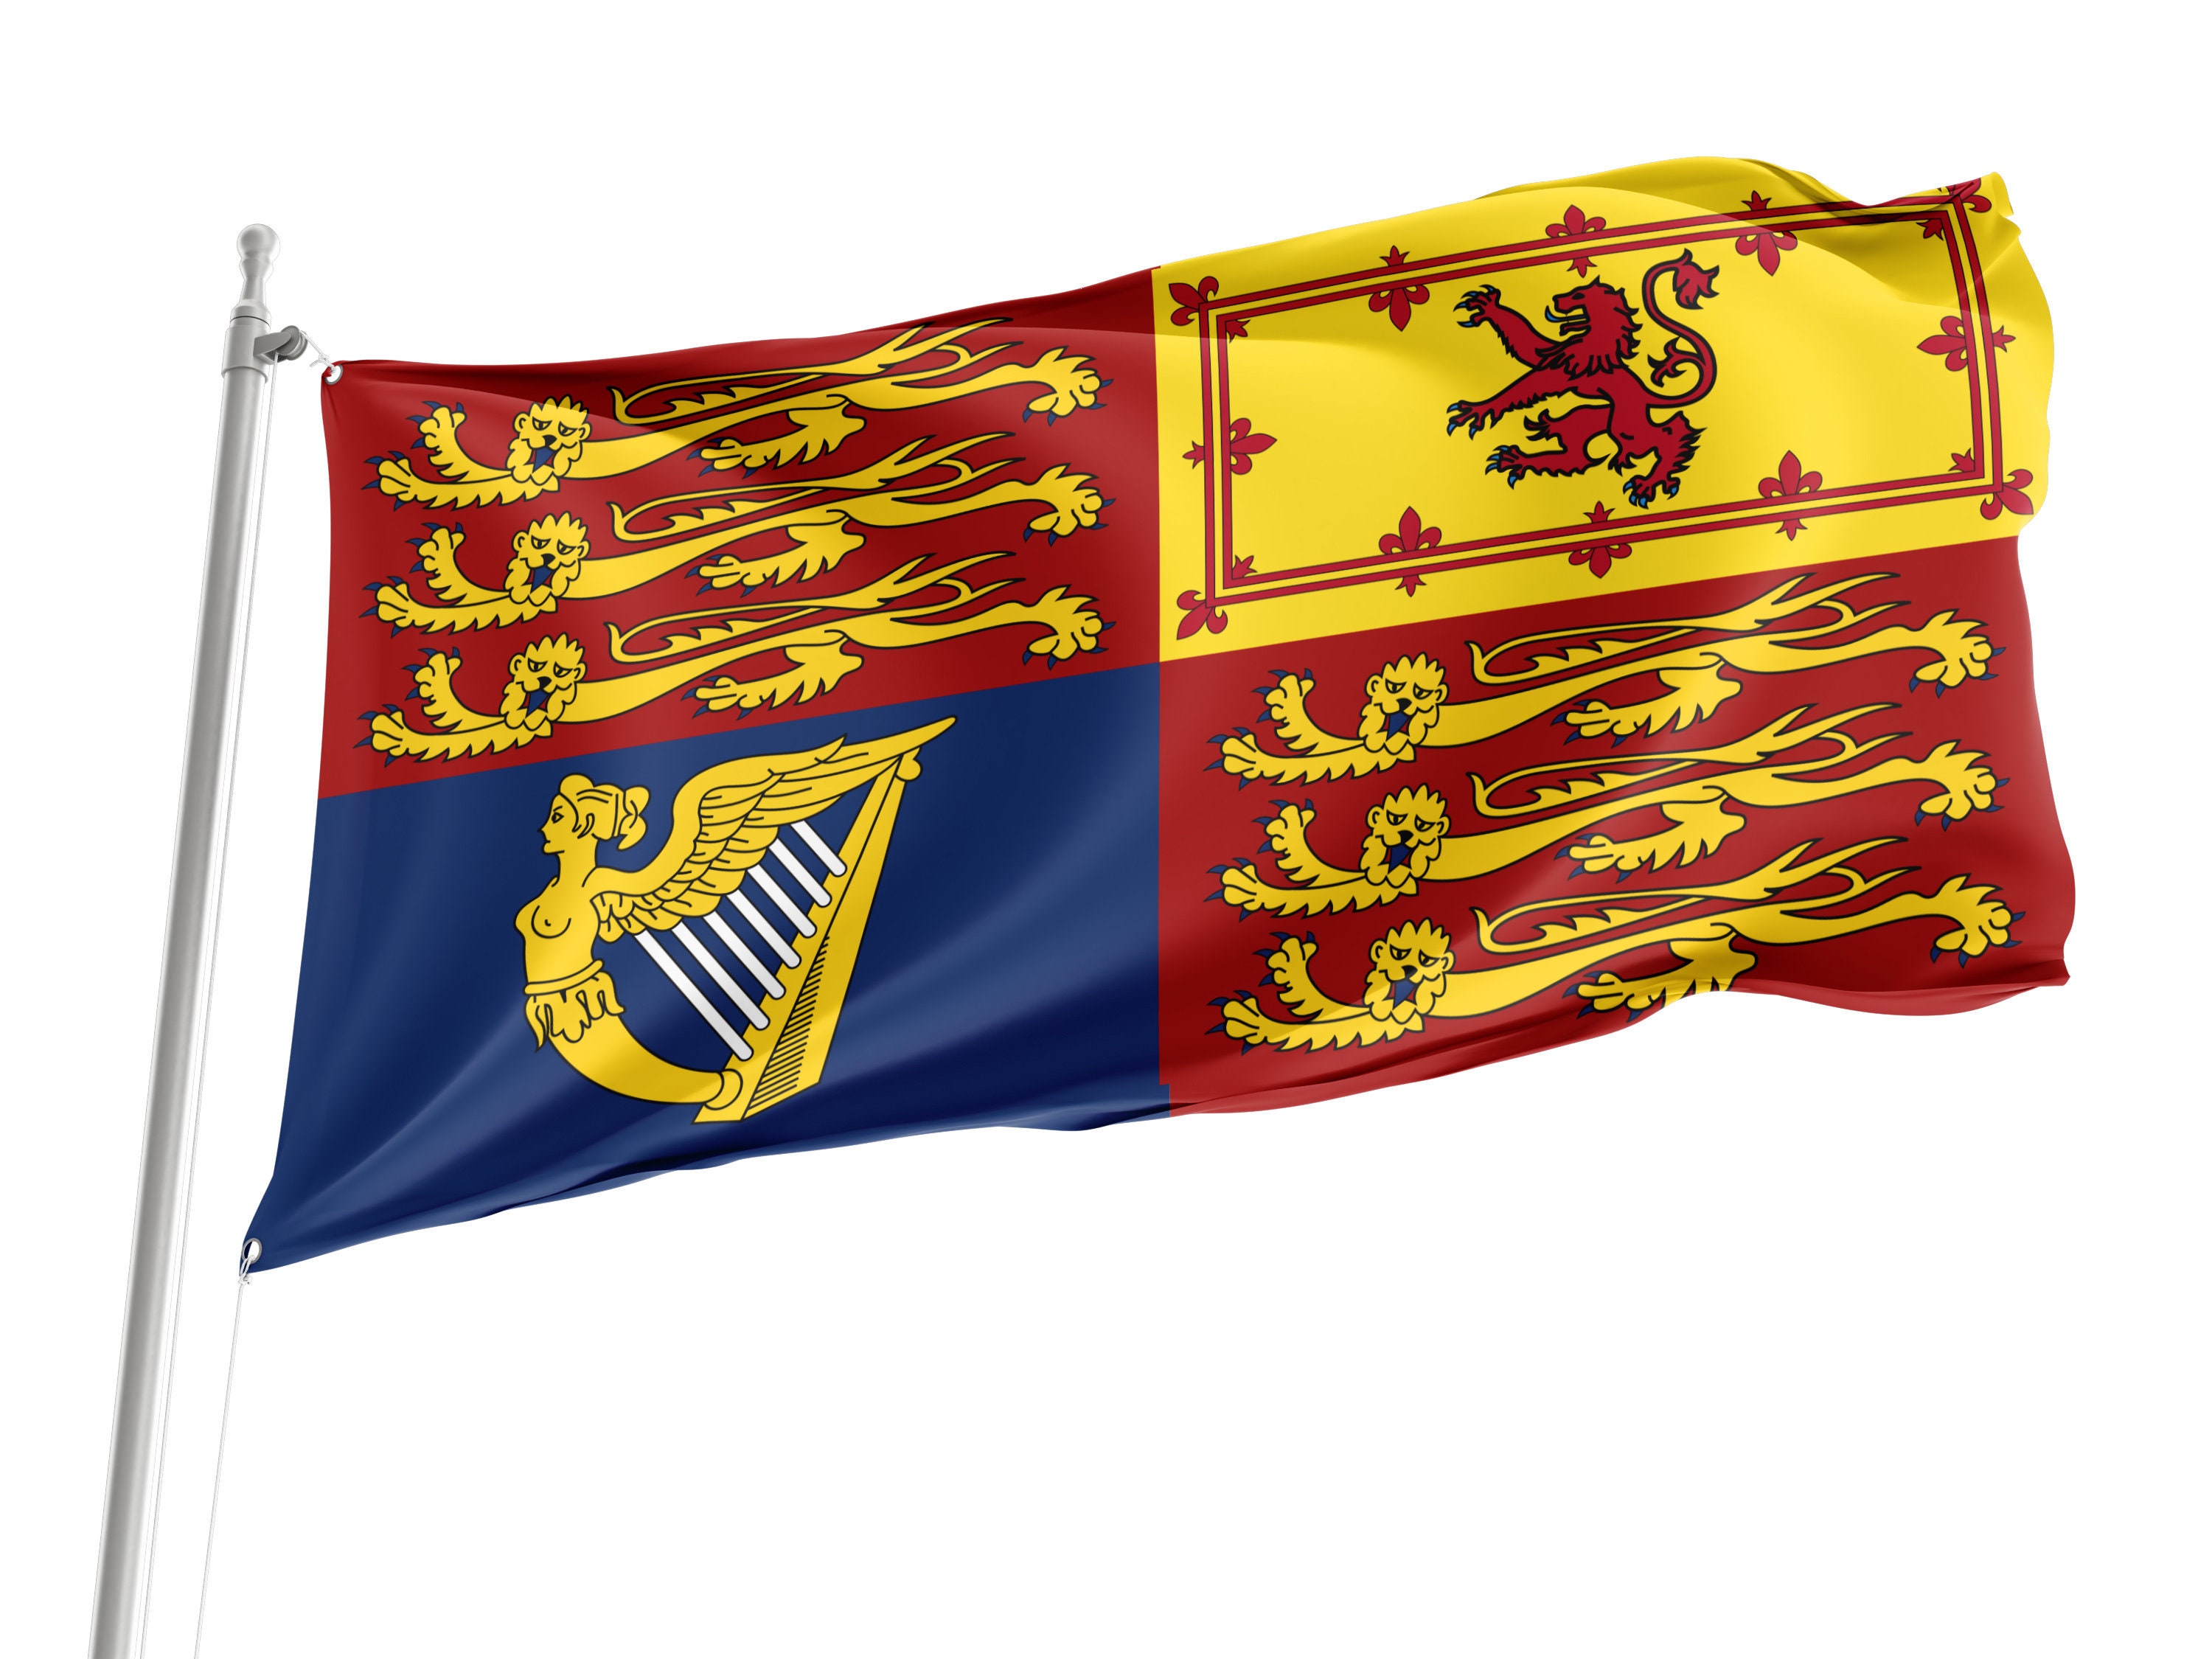 Brandenburg Flag for Sale - Buy online at Royal-Flags